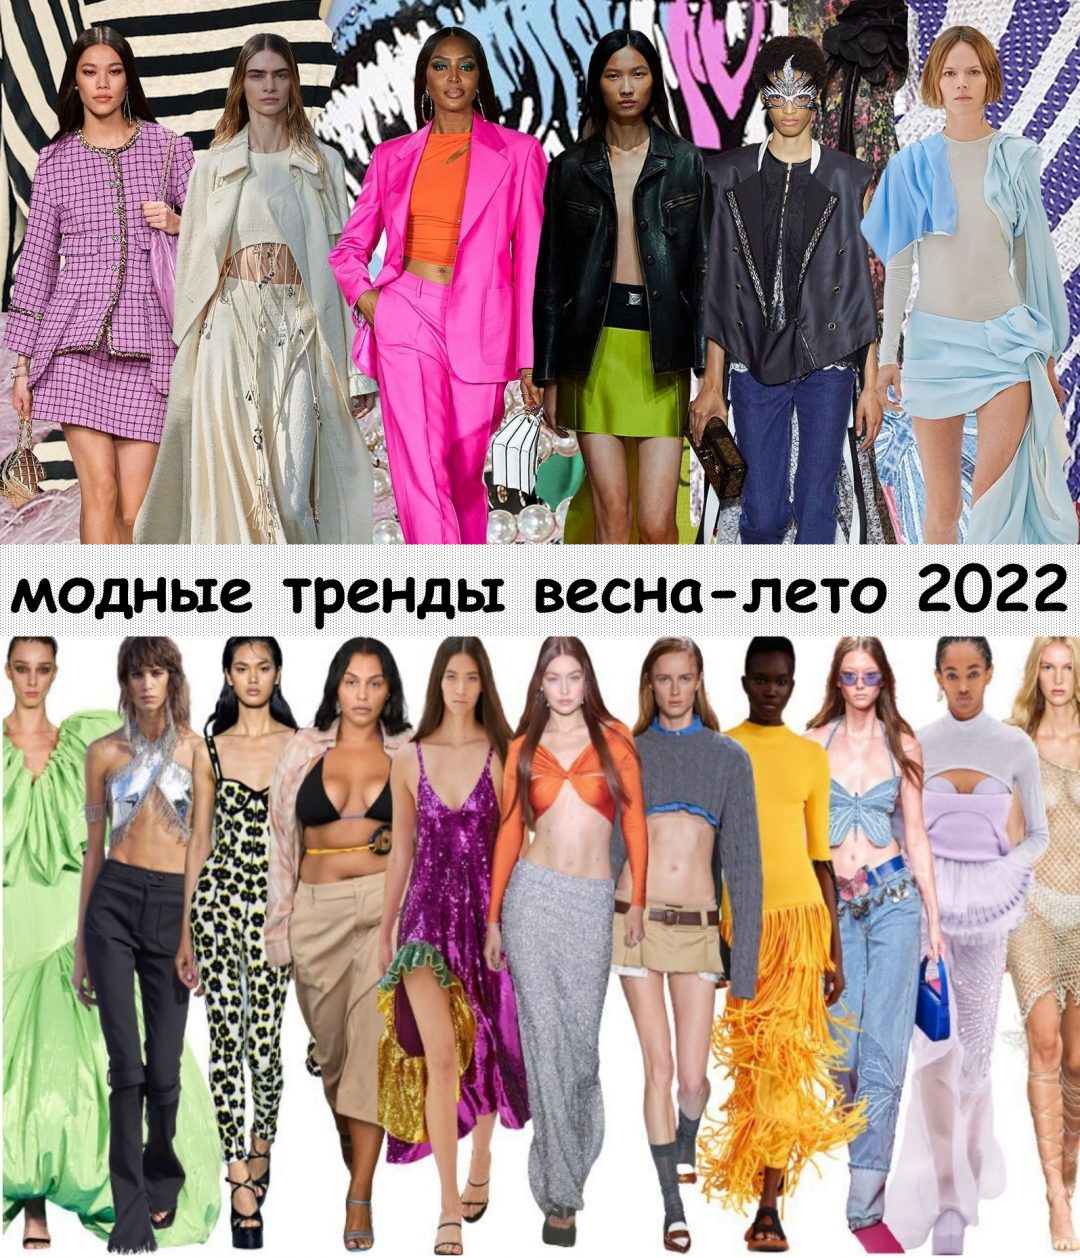 Модные тренды весна-лето 2022